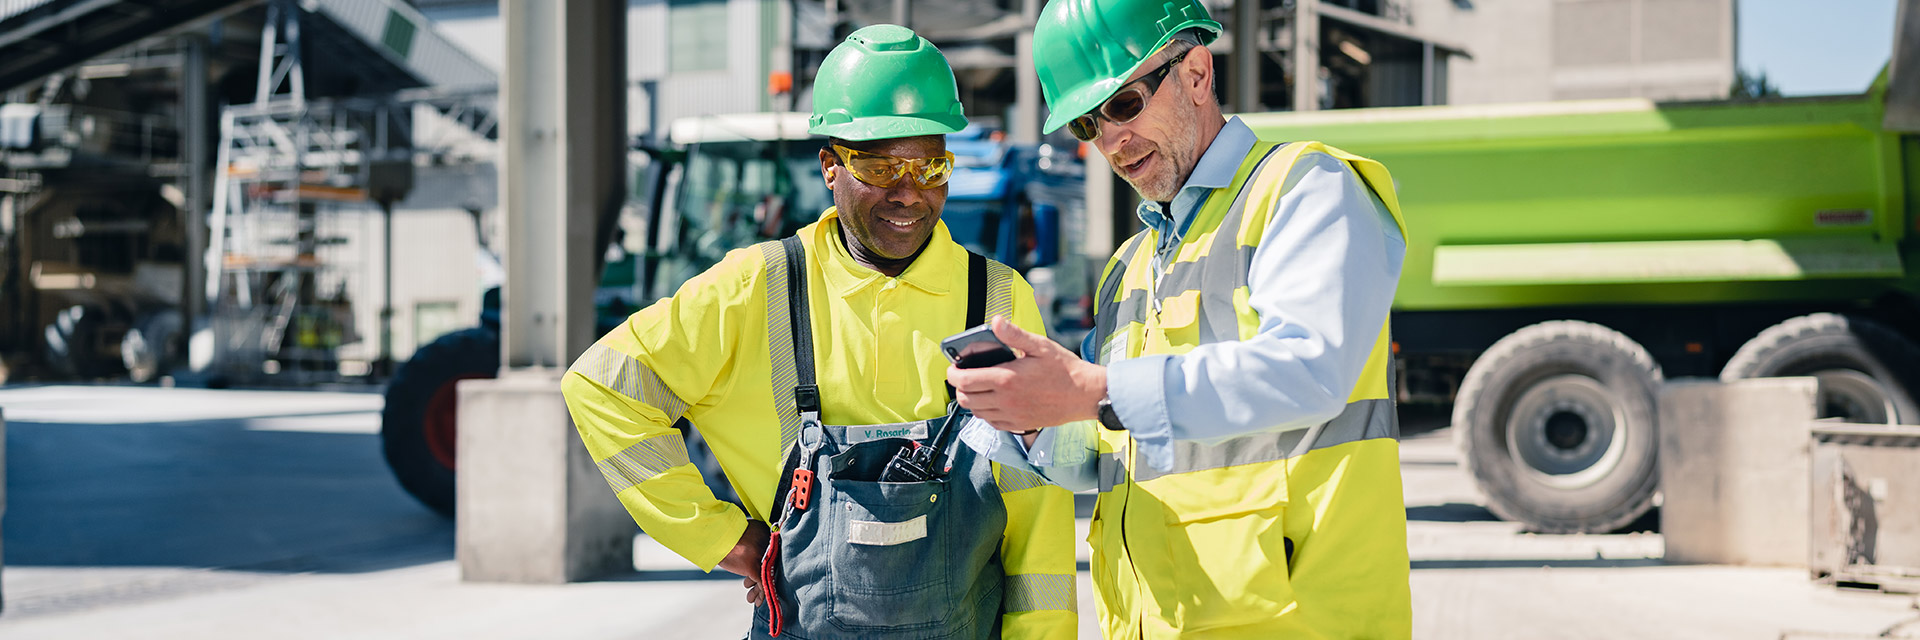 Ein Bauarbeiter in gelber Weste zeigt seinem Kollegen etwas auf seinem Handy